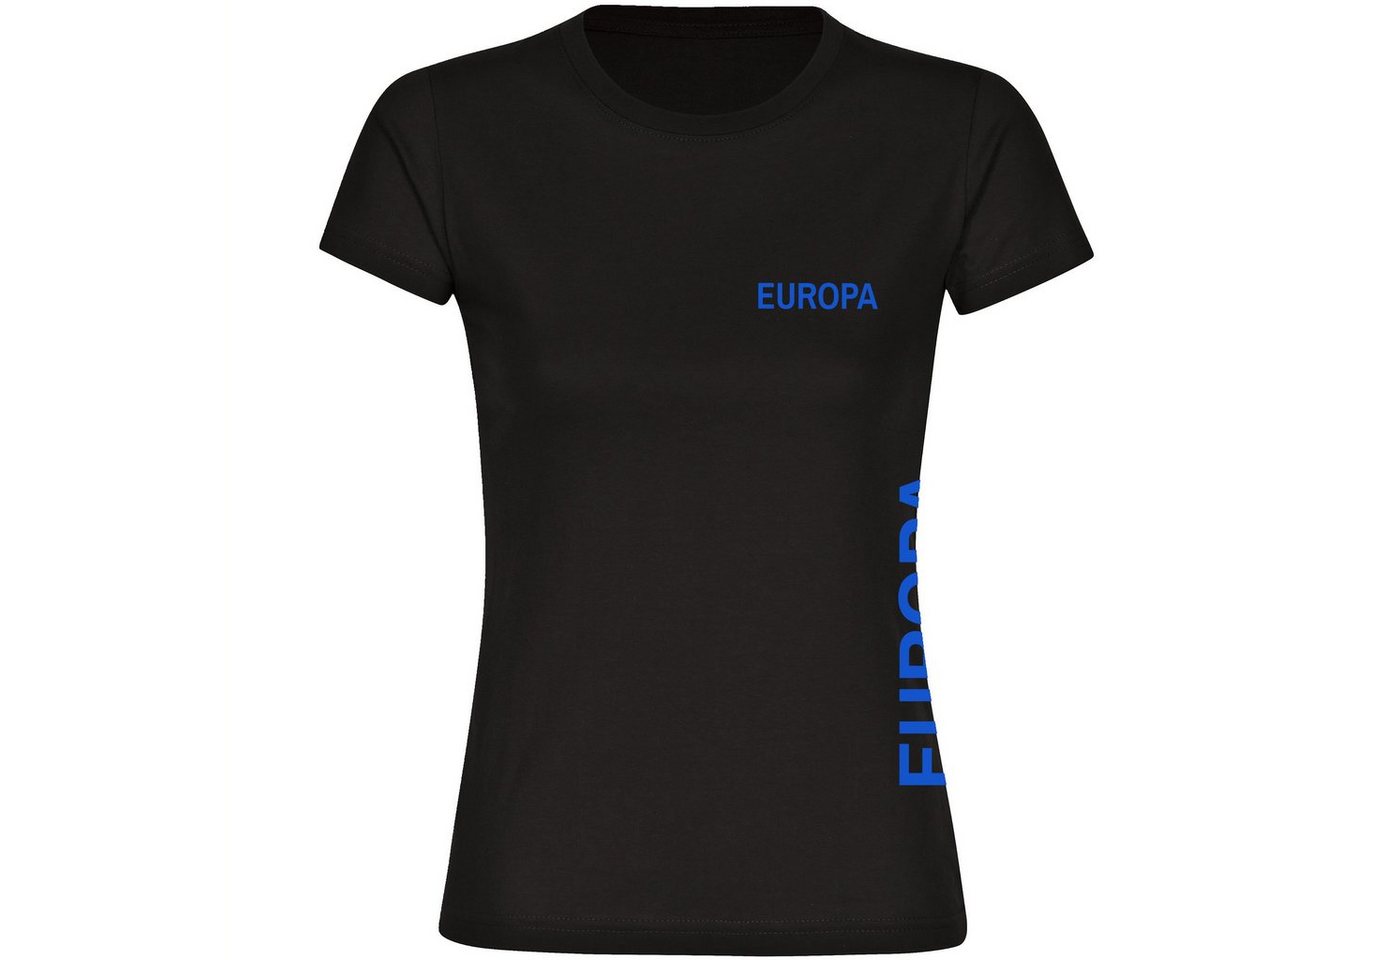 multifanshop T-Shirt Damen Europa - Brust & Seite - Frauen von multifanshop